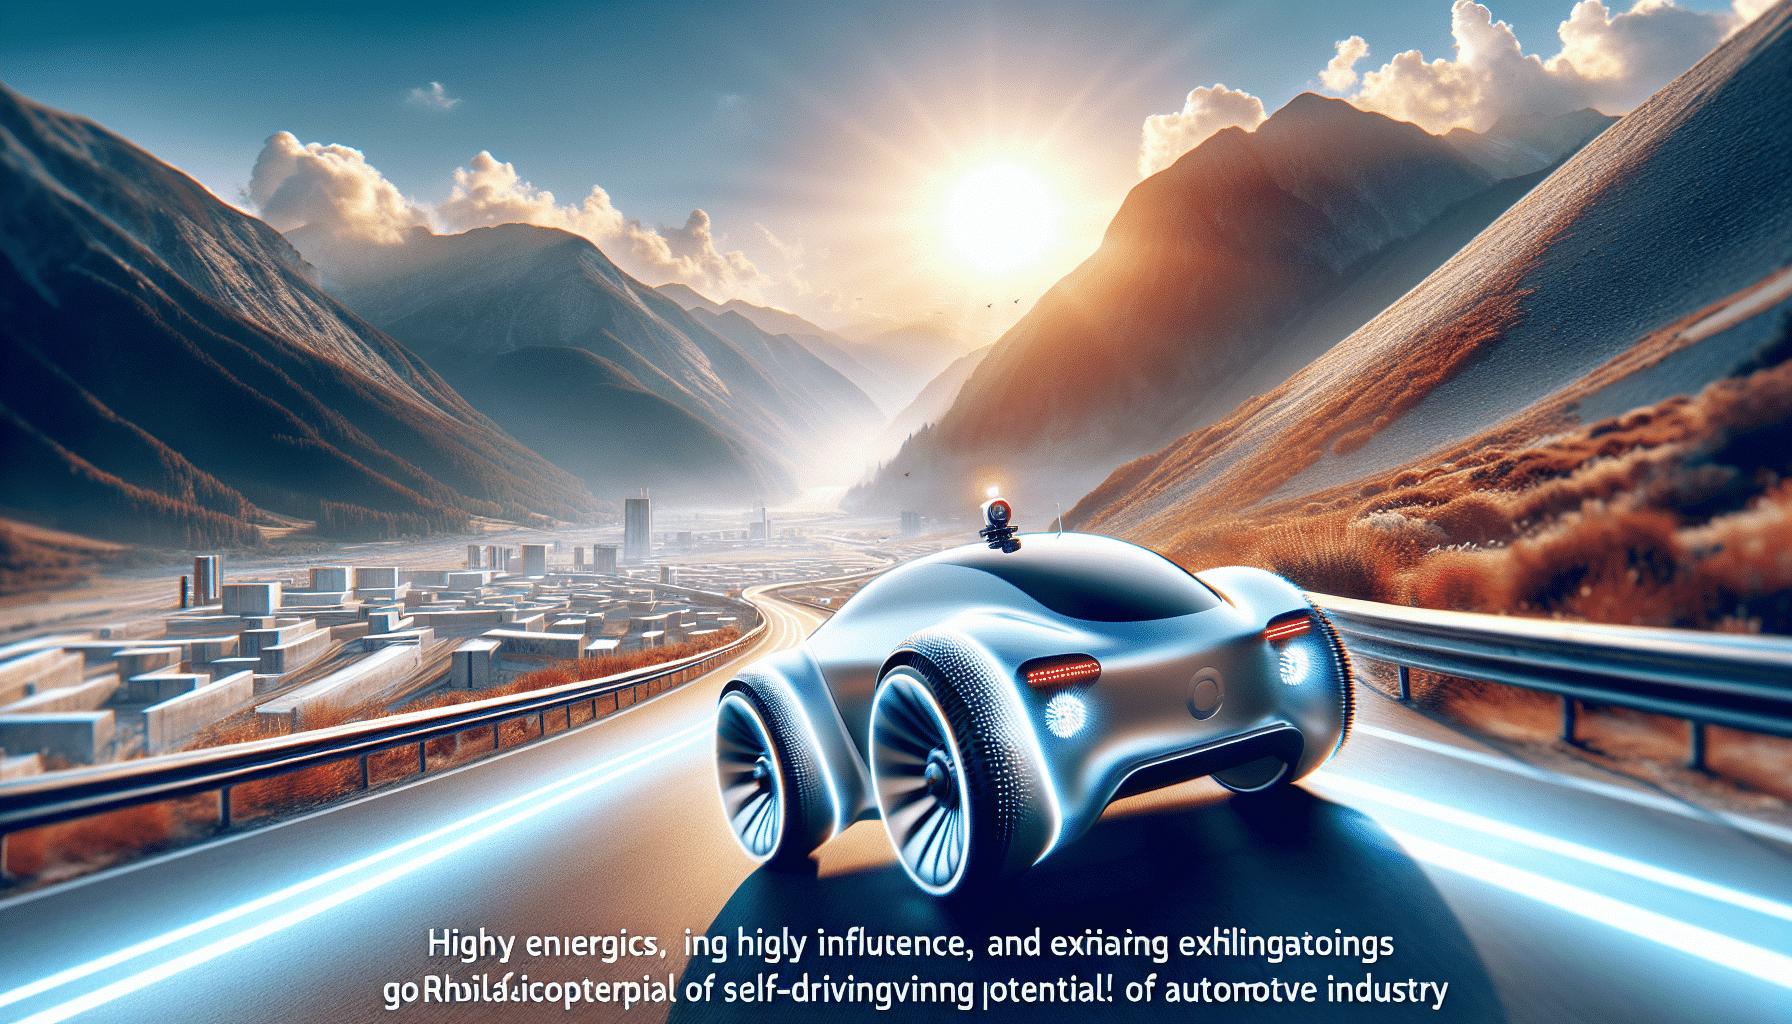 descubre el rol de roborace en la industria automotriz y su impacto en la innovación tecnológica y la competitividad del sector.